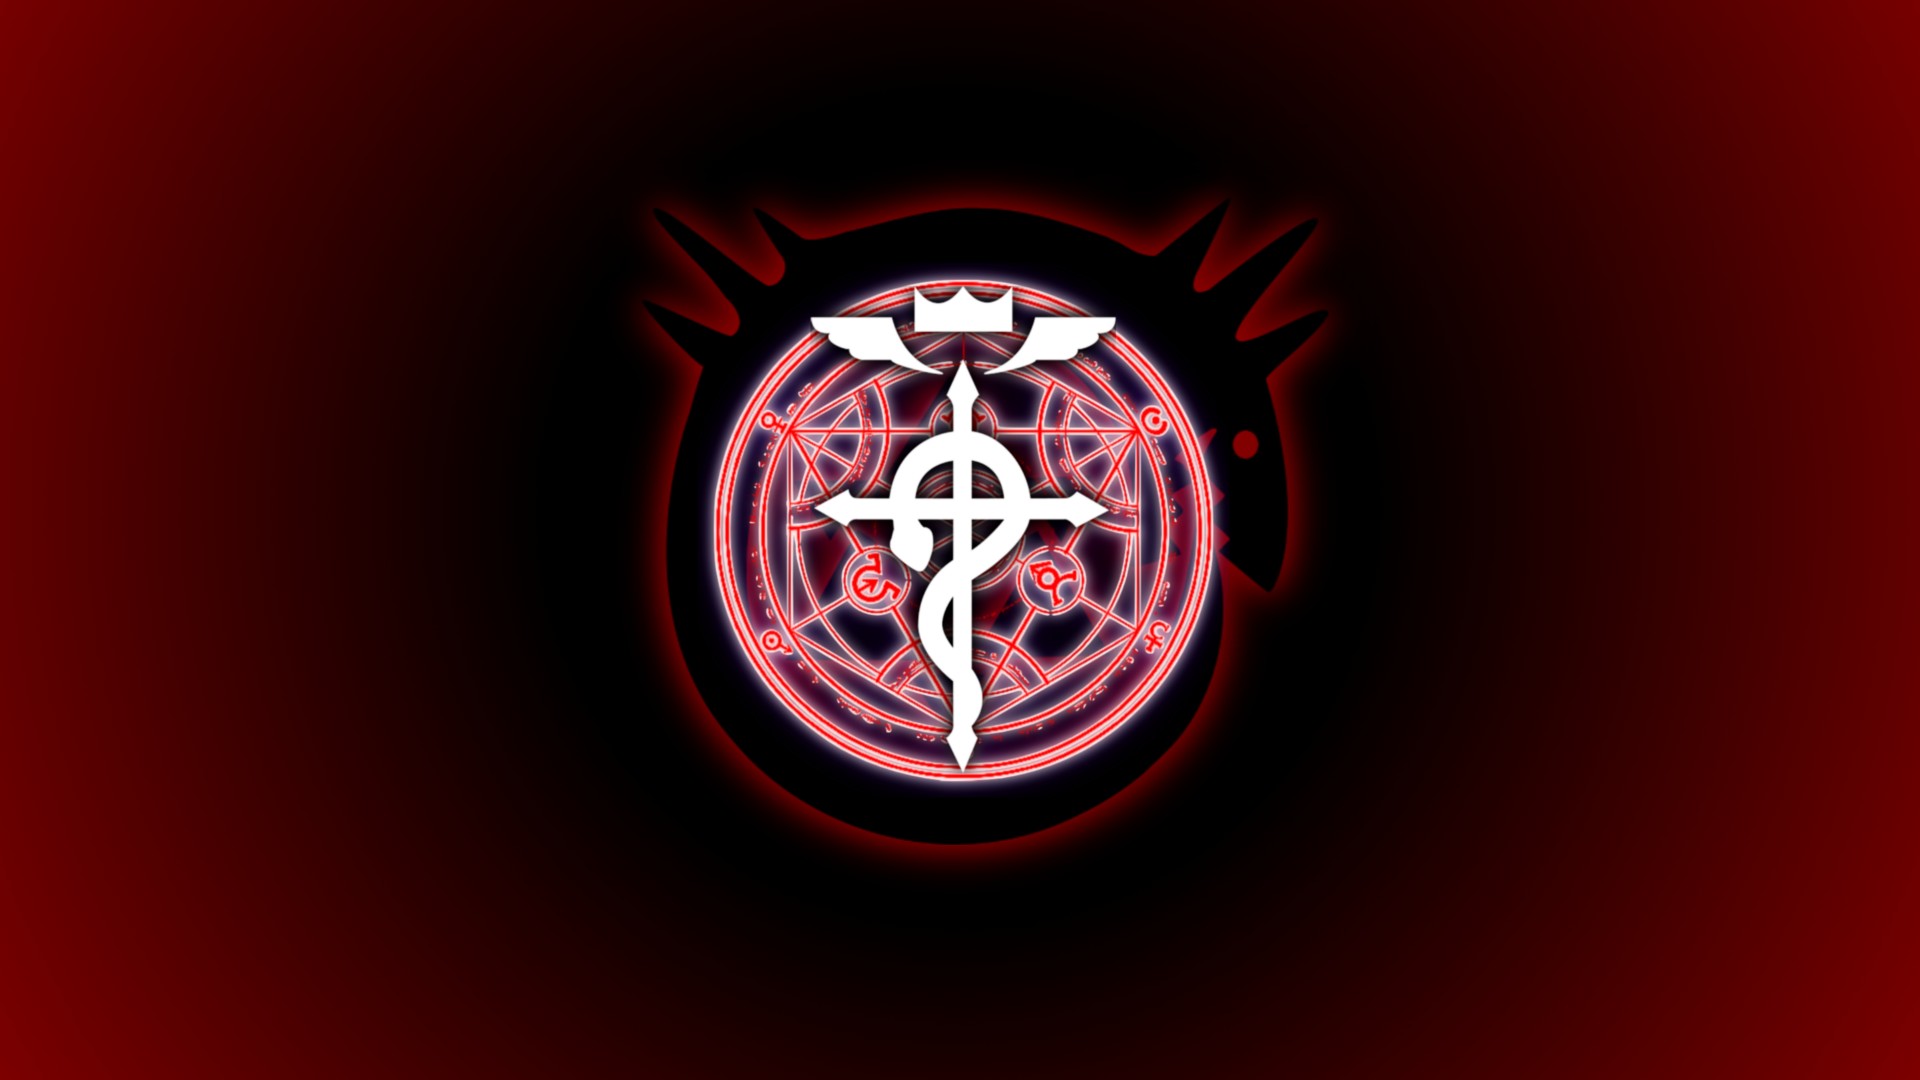 Full Metal Alchemist, Fullmetal Alchemist: Brotherhood Wallpapers HD